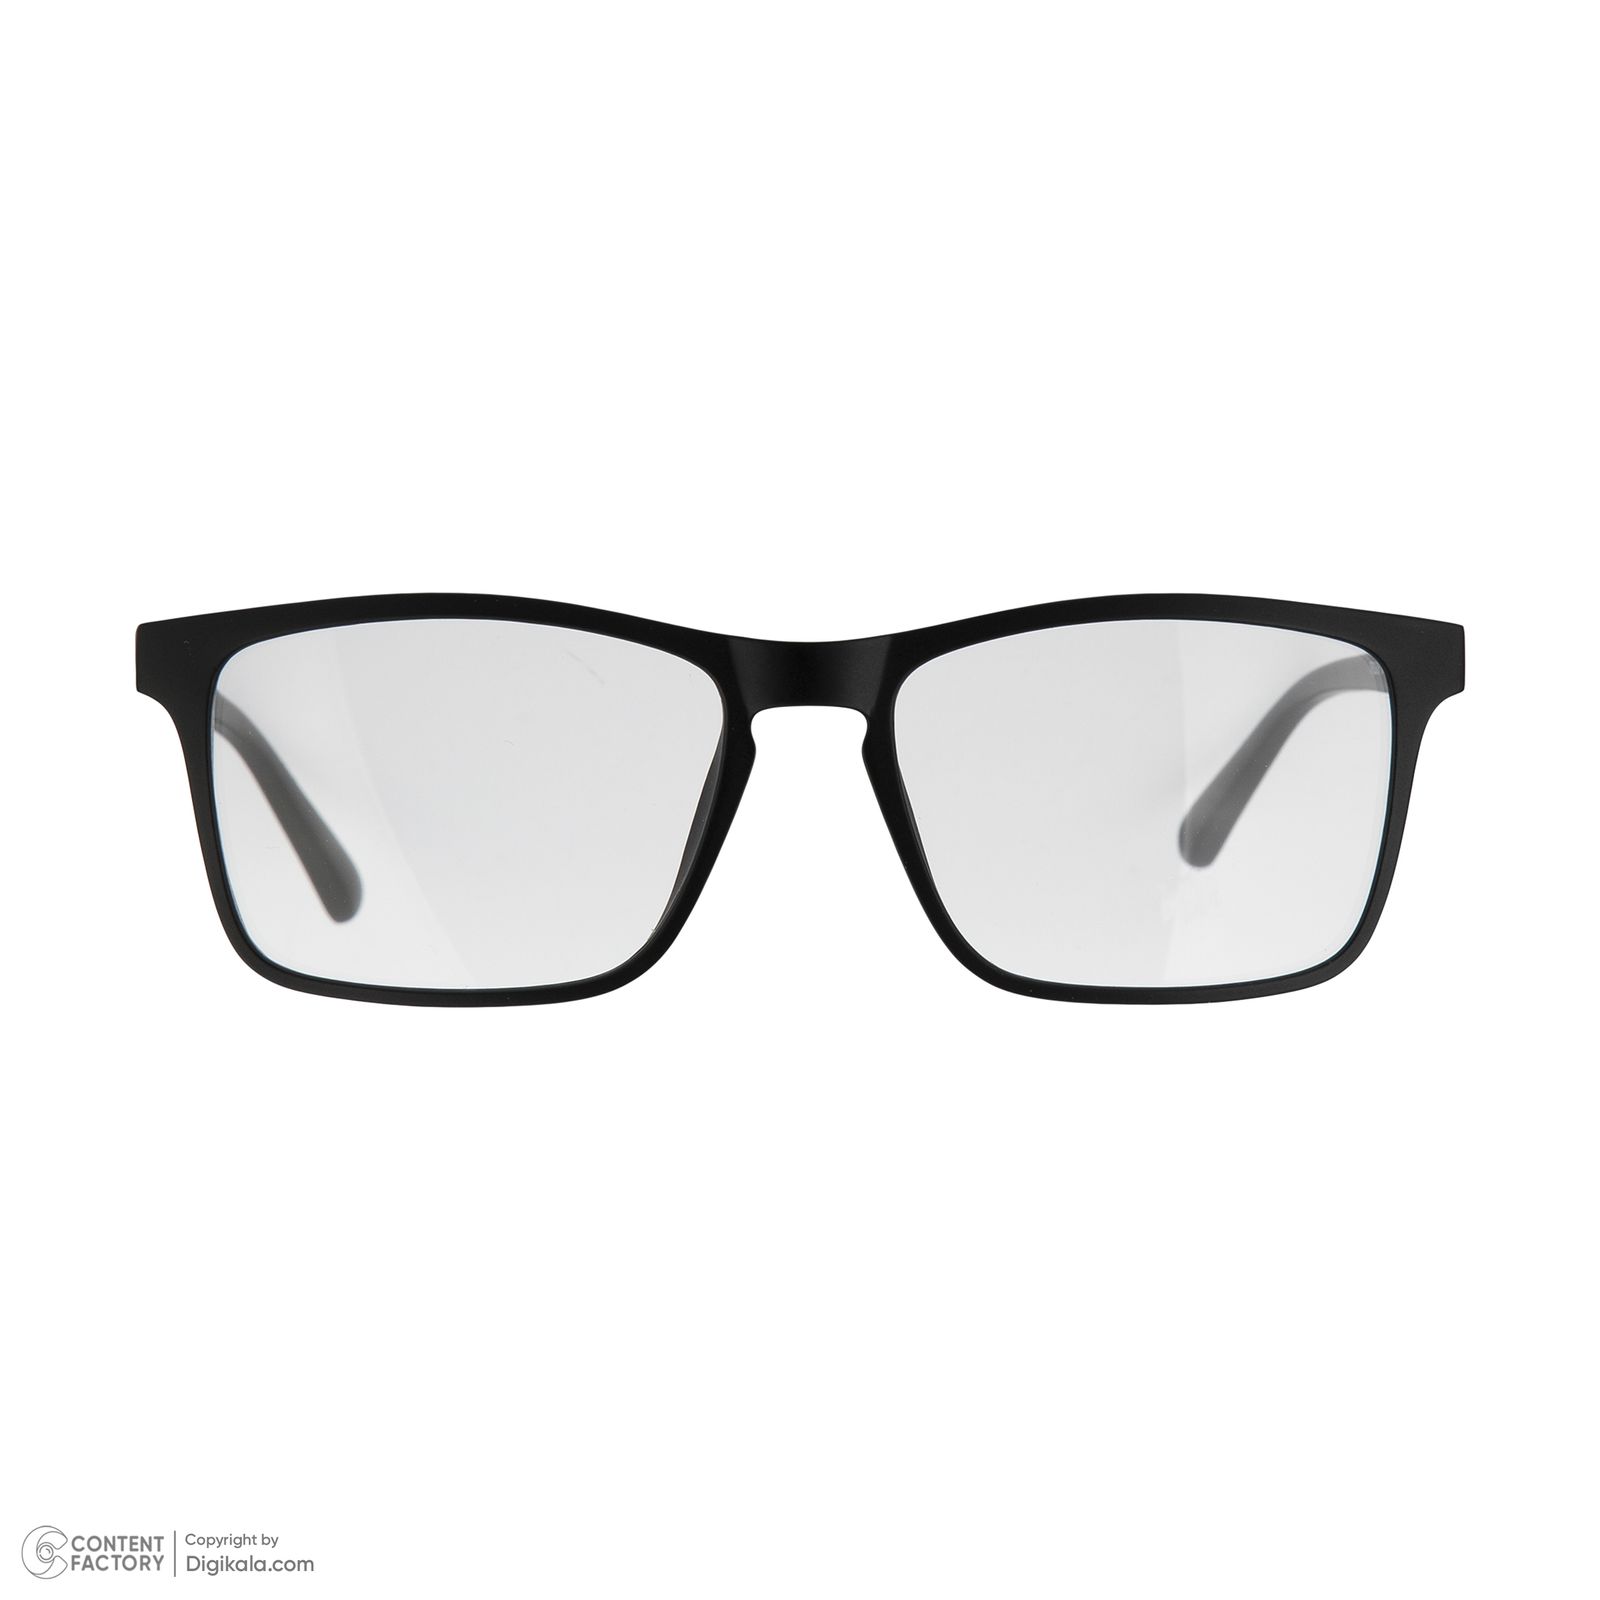 فریم عینک طبی دونیک مدل tr2268-c2 به همراه کاور آفتابی مجموعه 6 عددی -  - 3